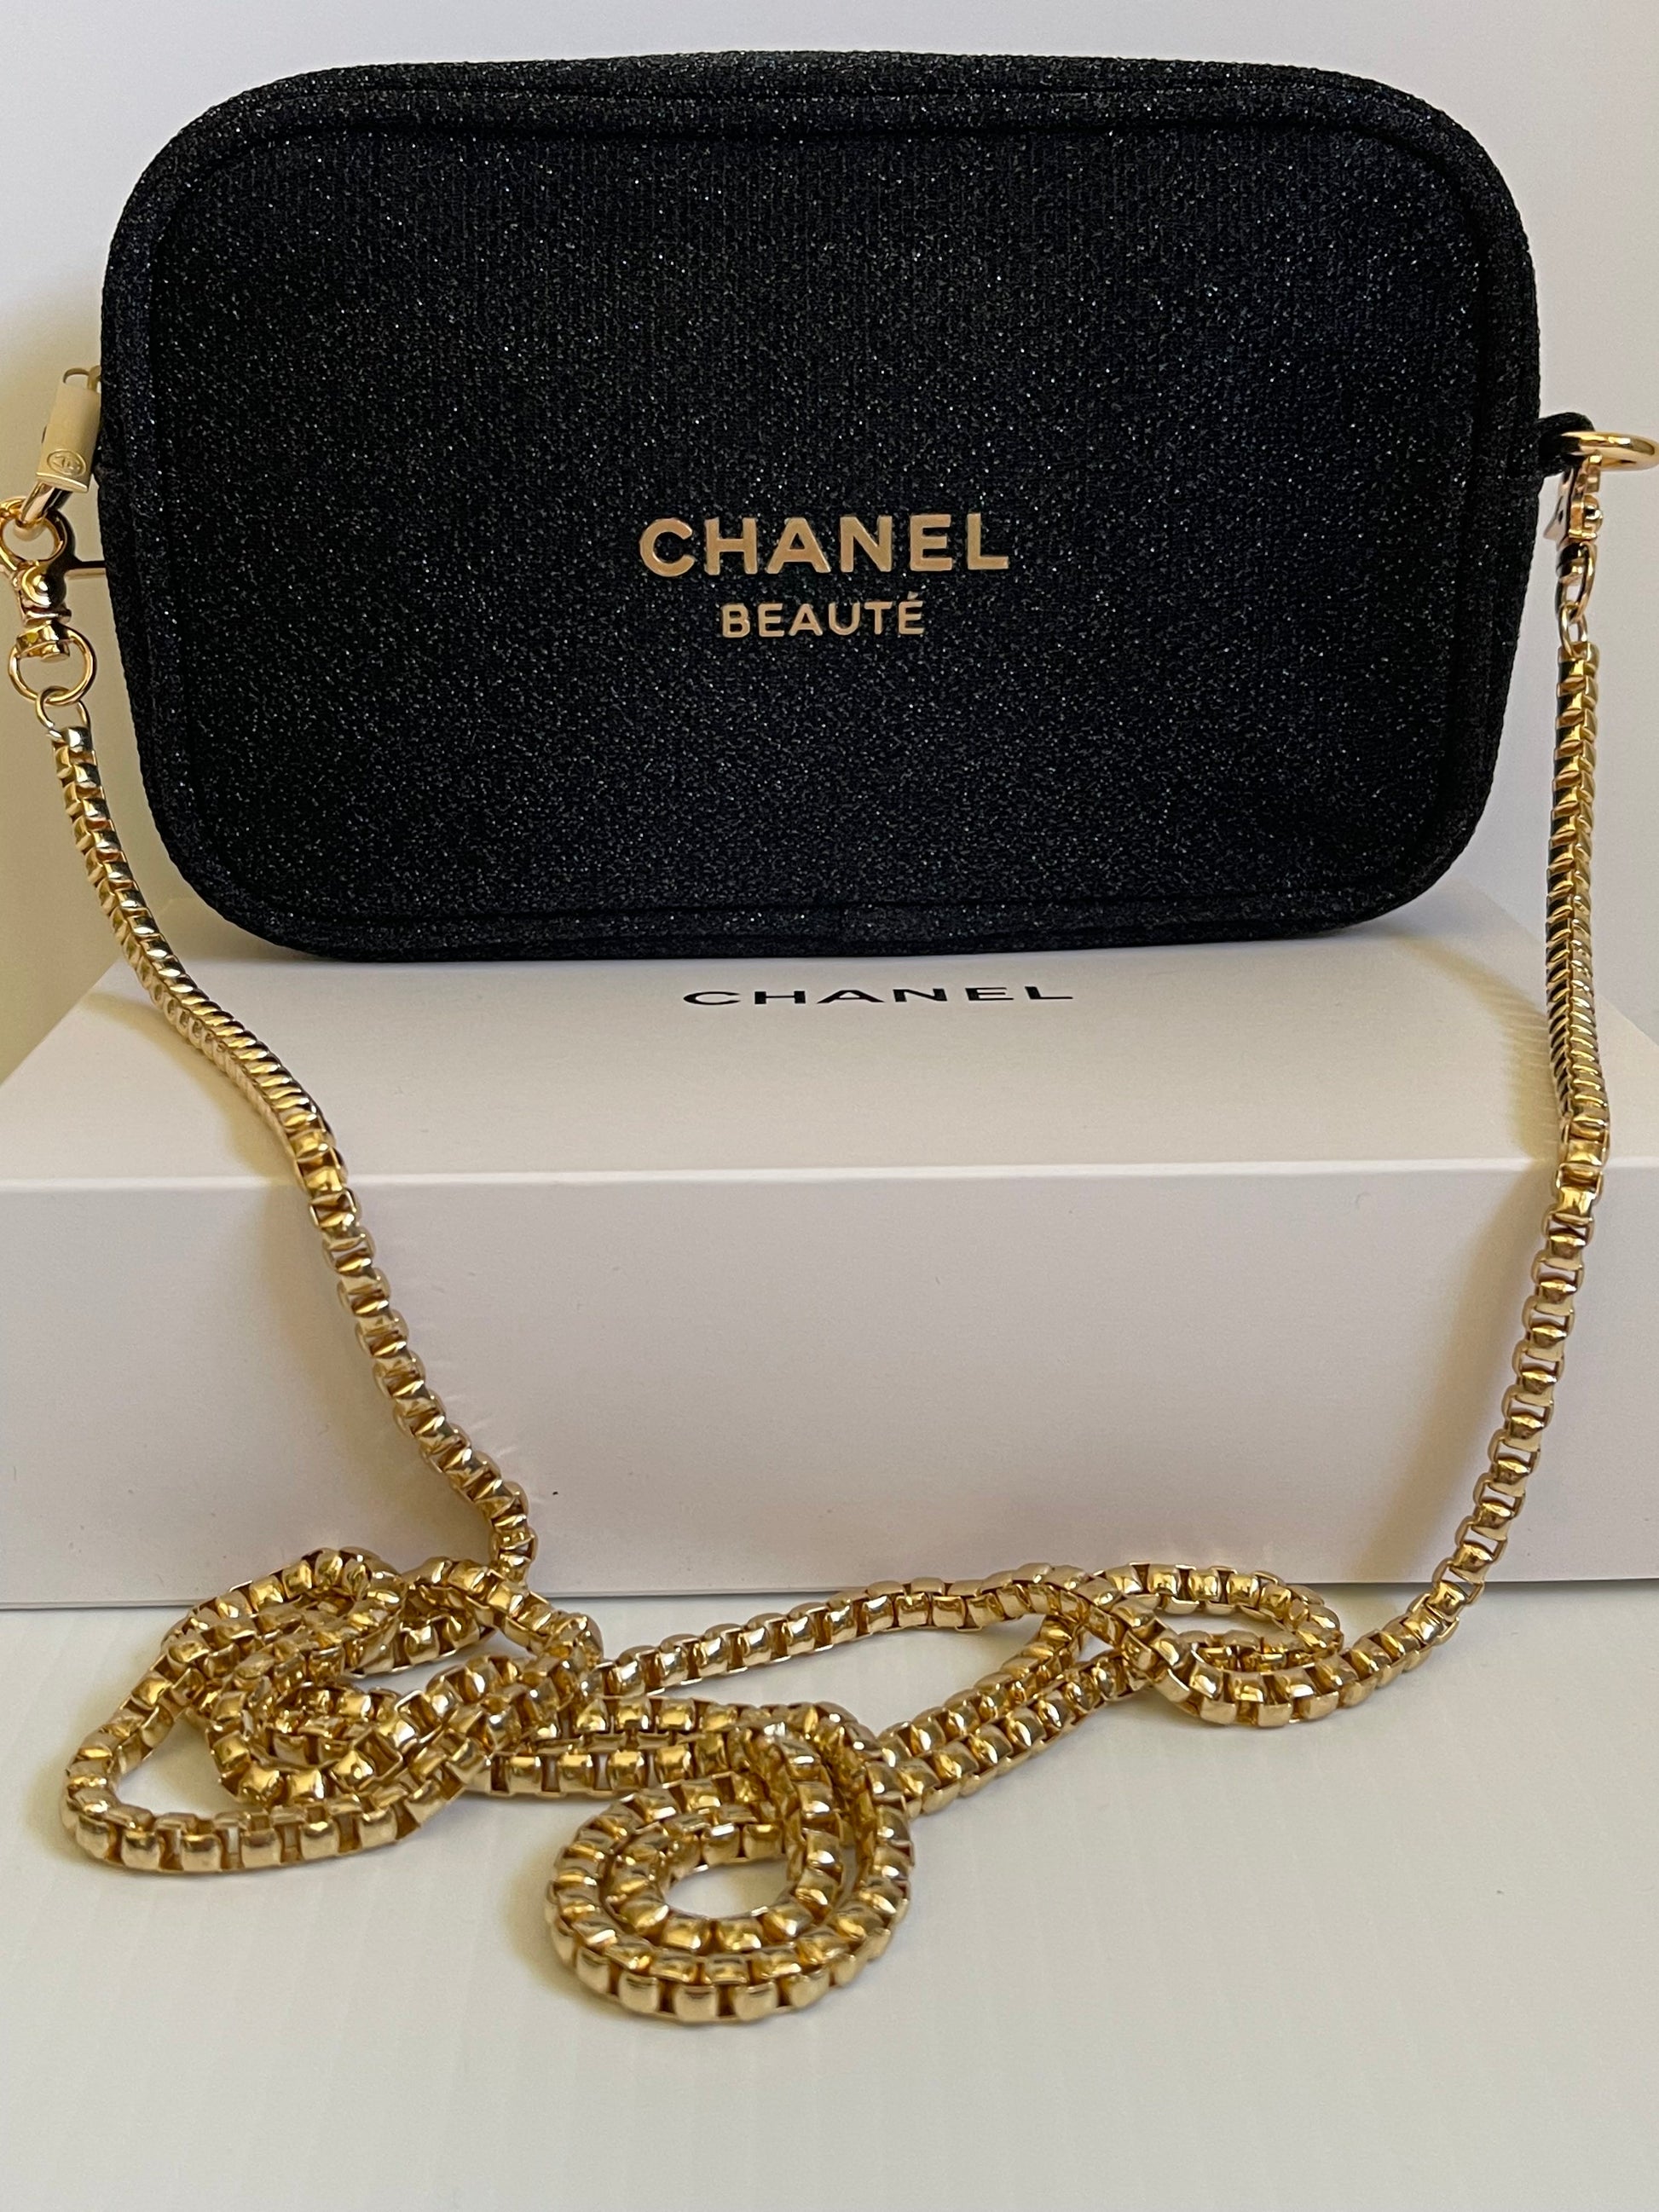 Chanel vip beaute gift - Gem